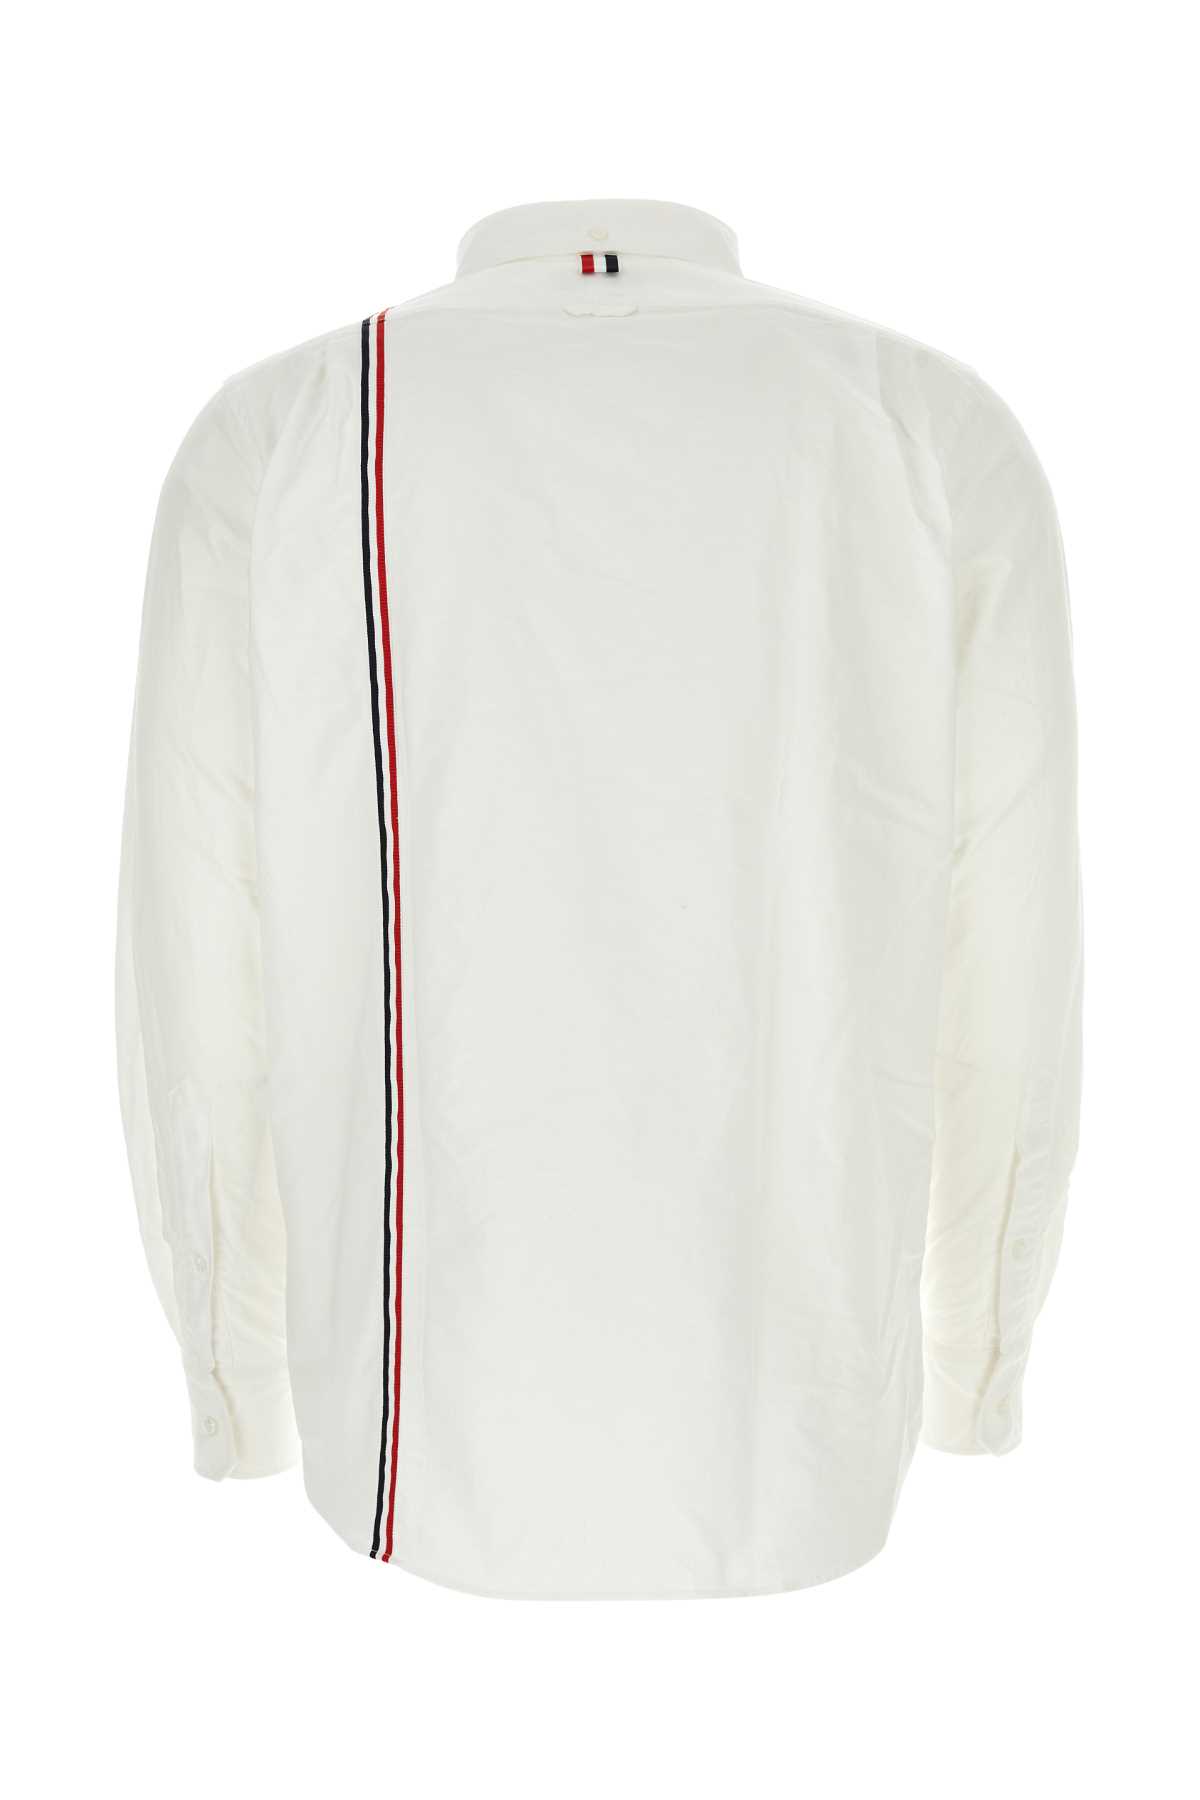 Thom Browne White Oxford Shirt